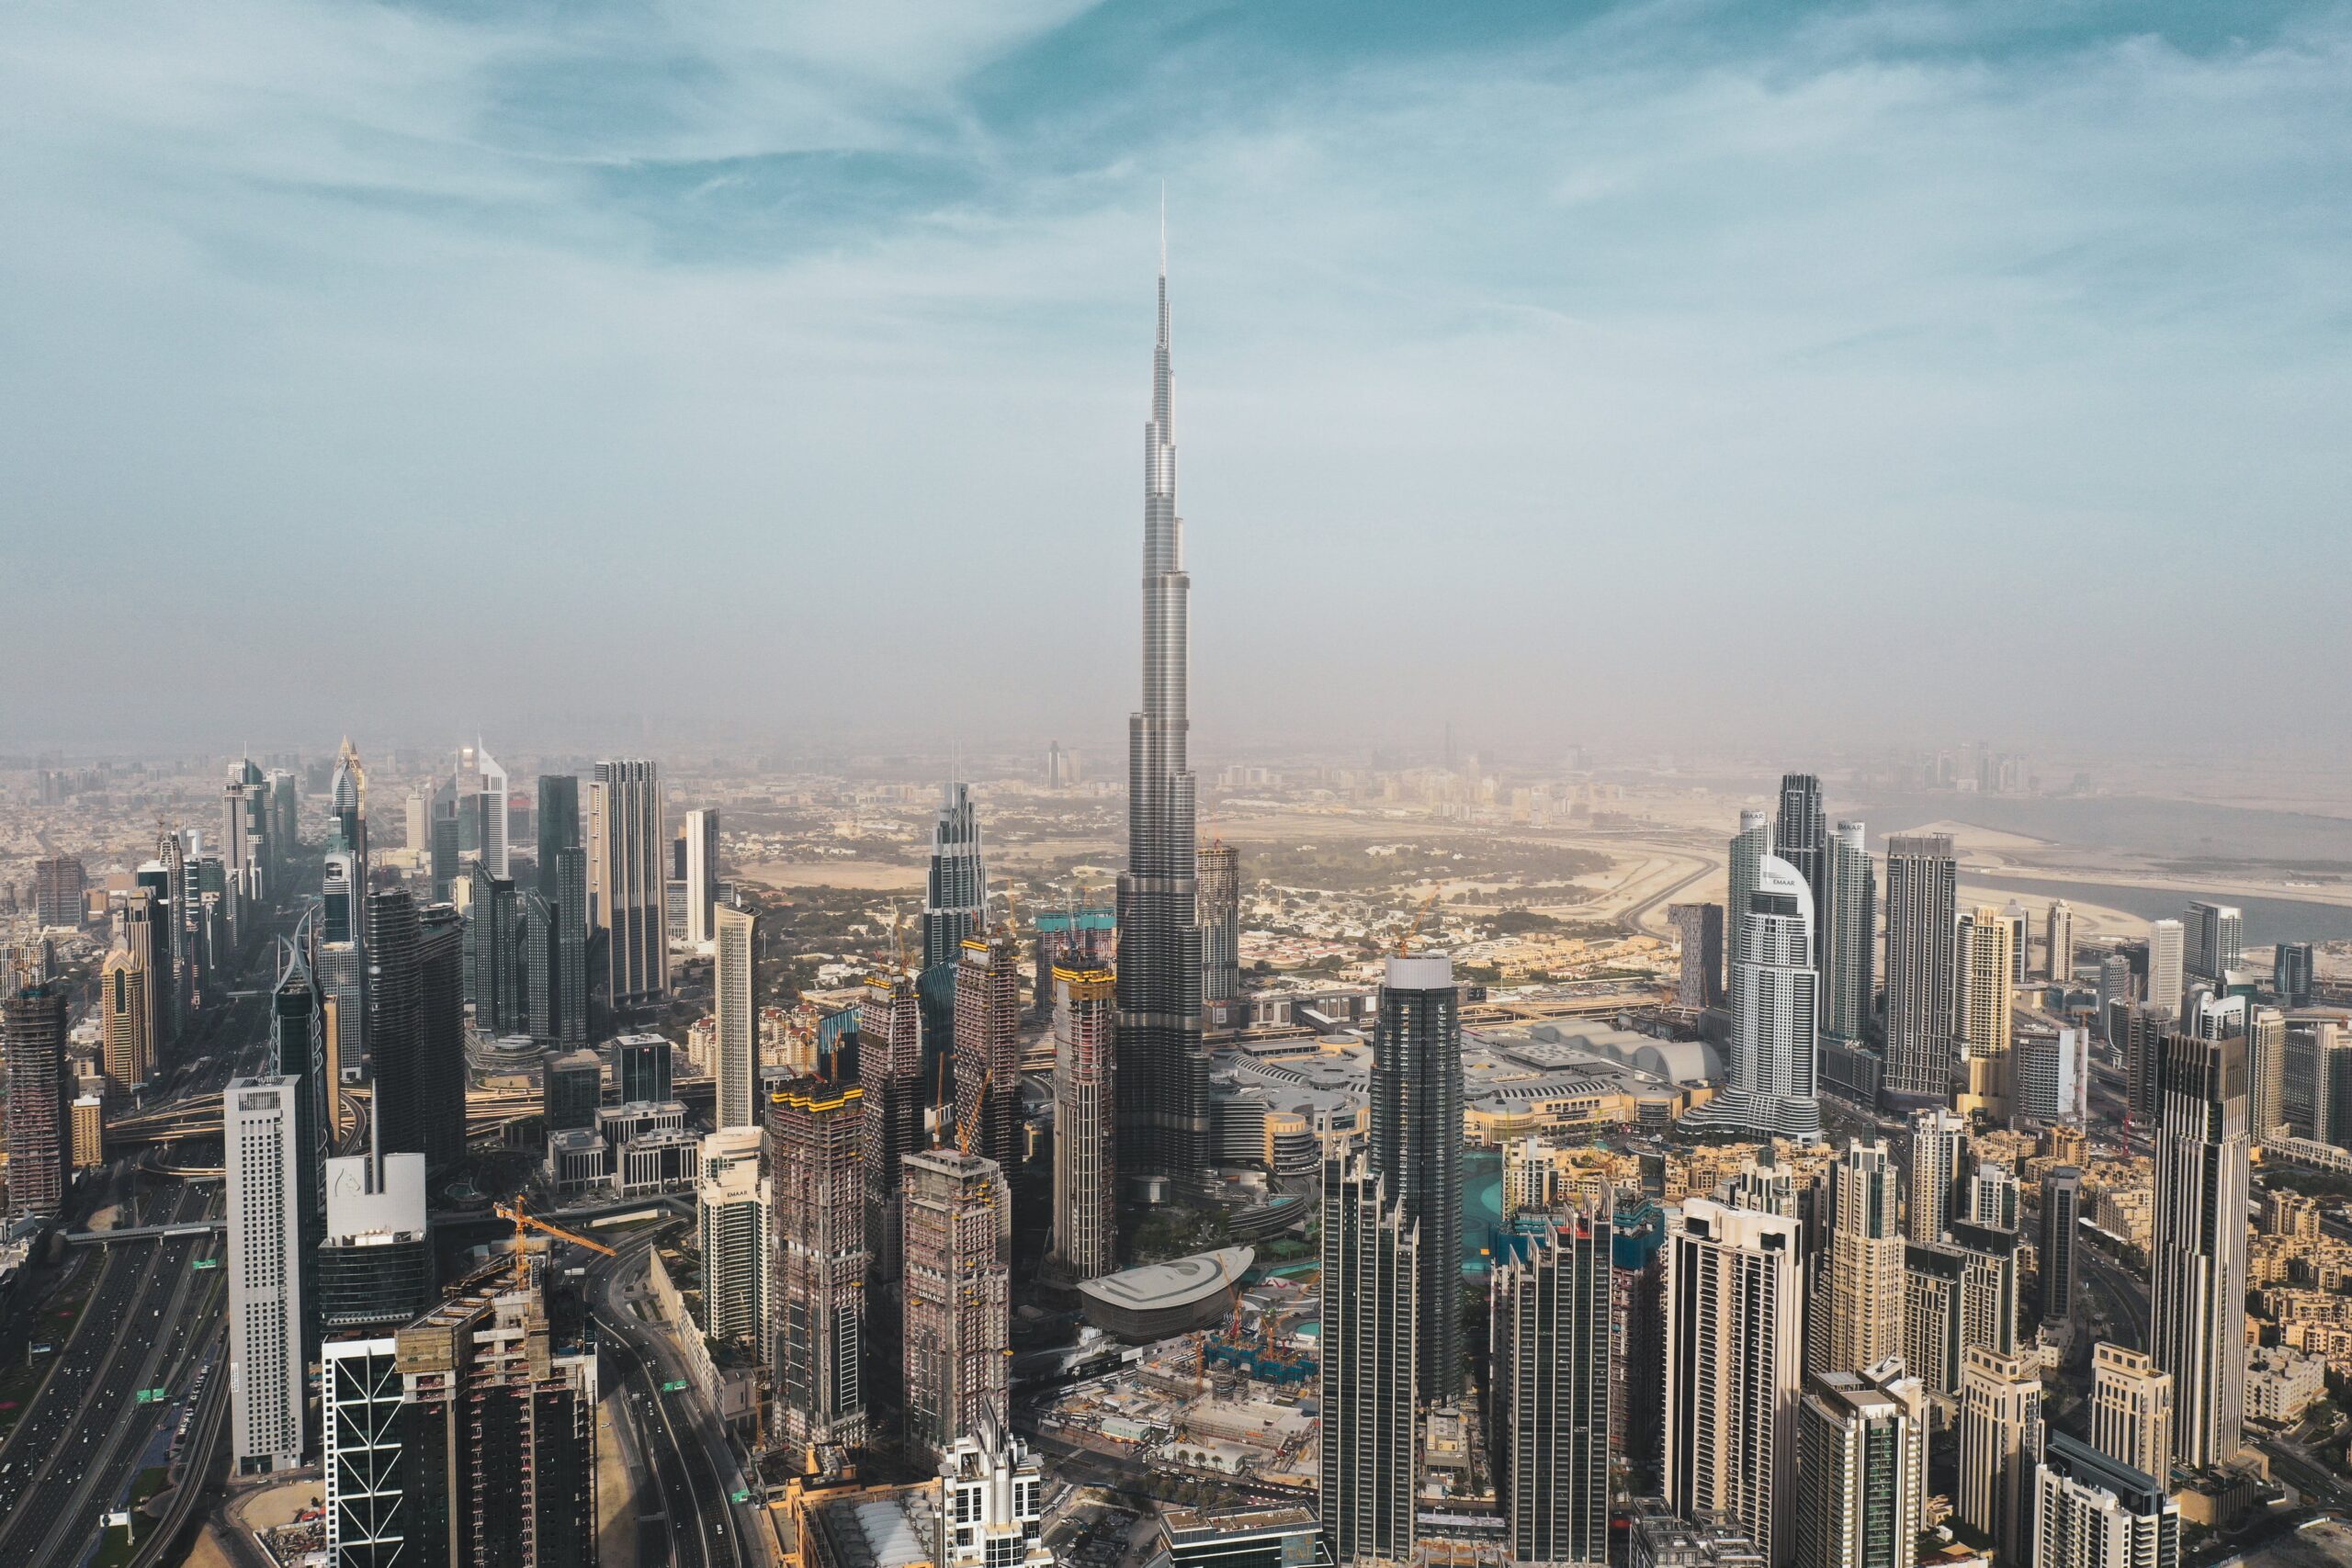 Real Estate Development in Dubai